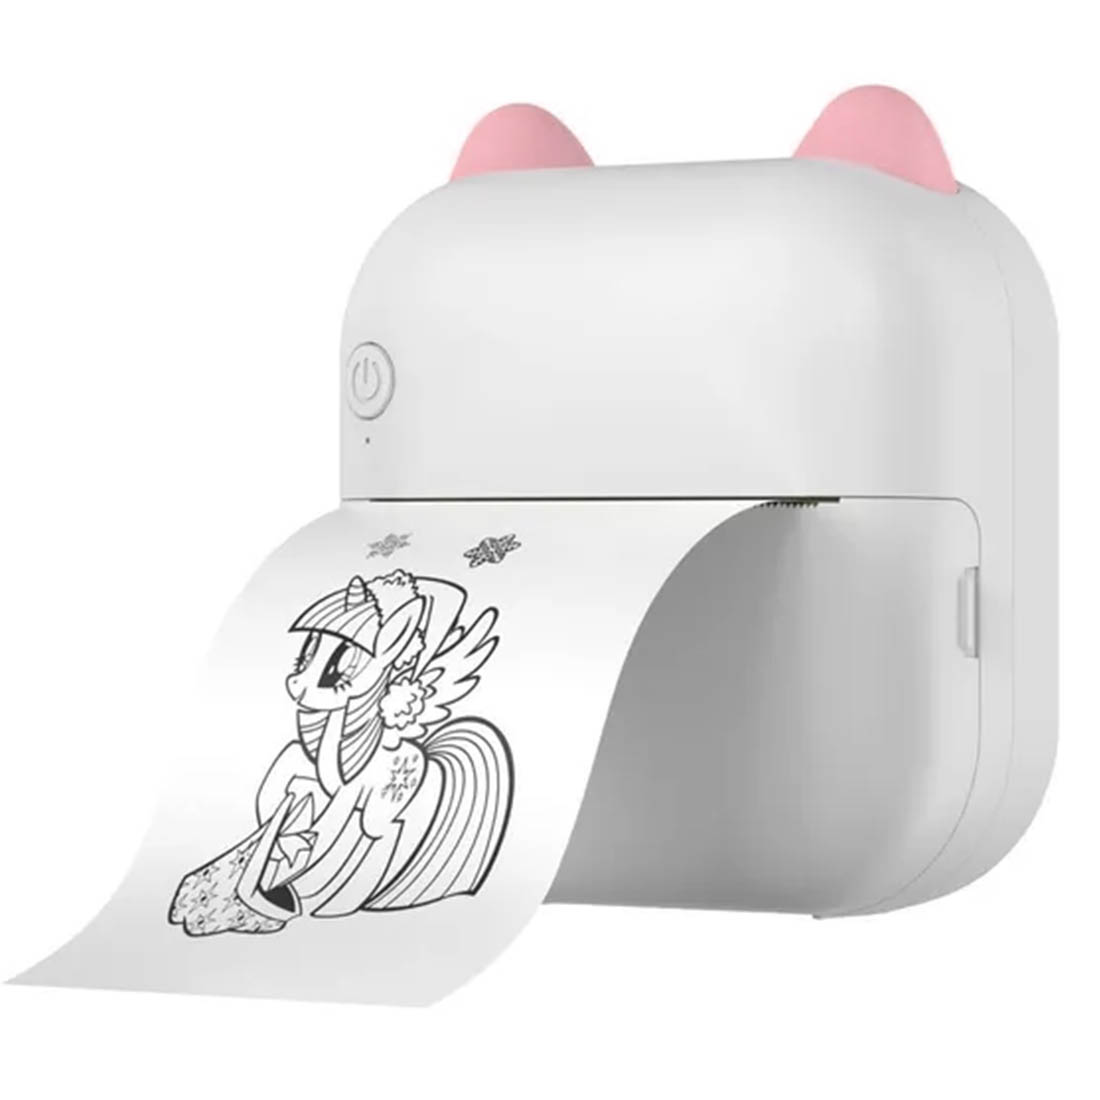 Беспроводной портативный мини принтер M5, цвет бело розовый